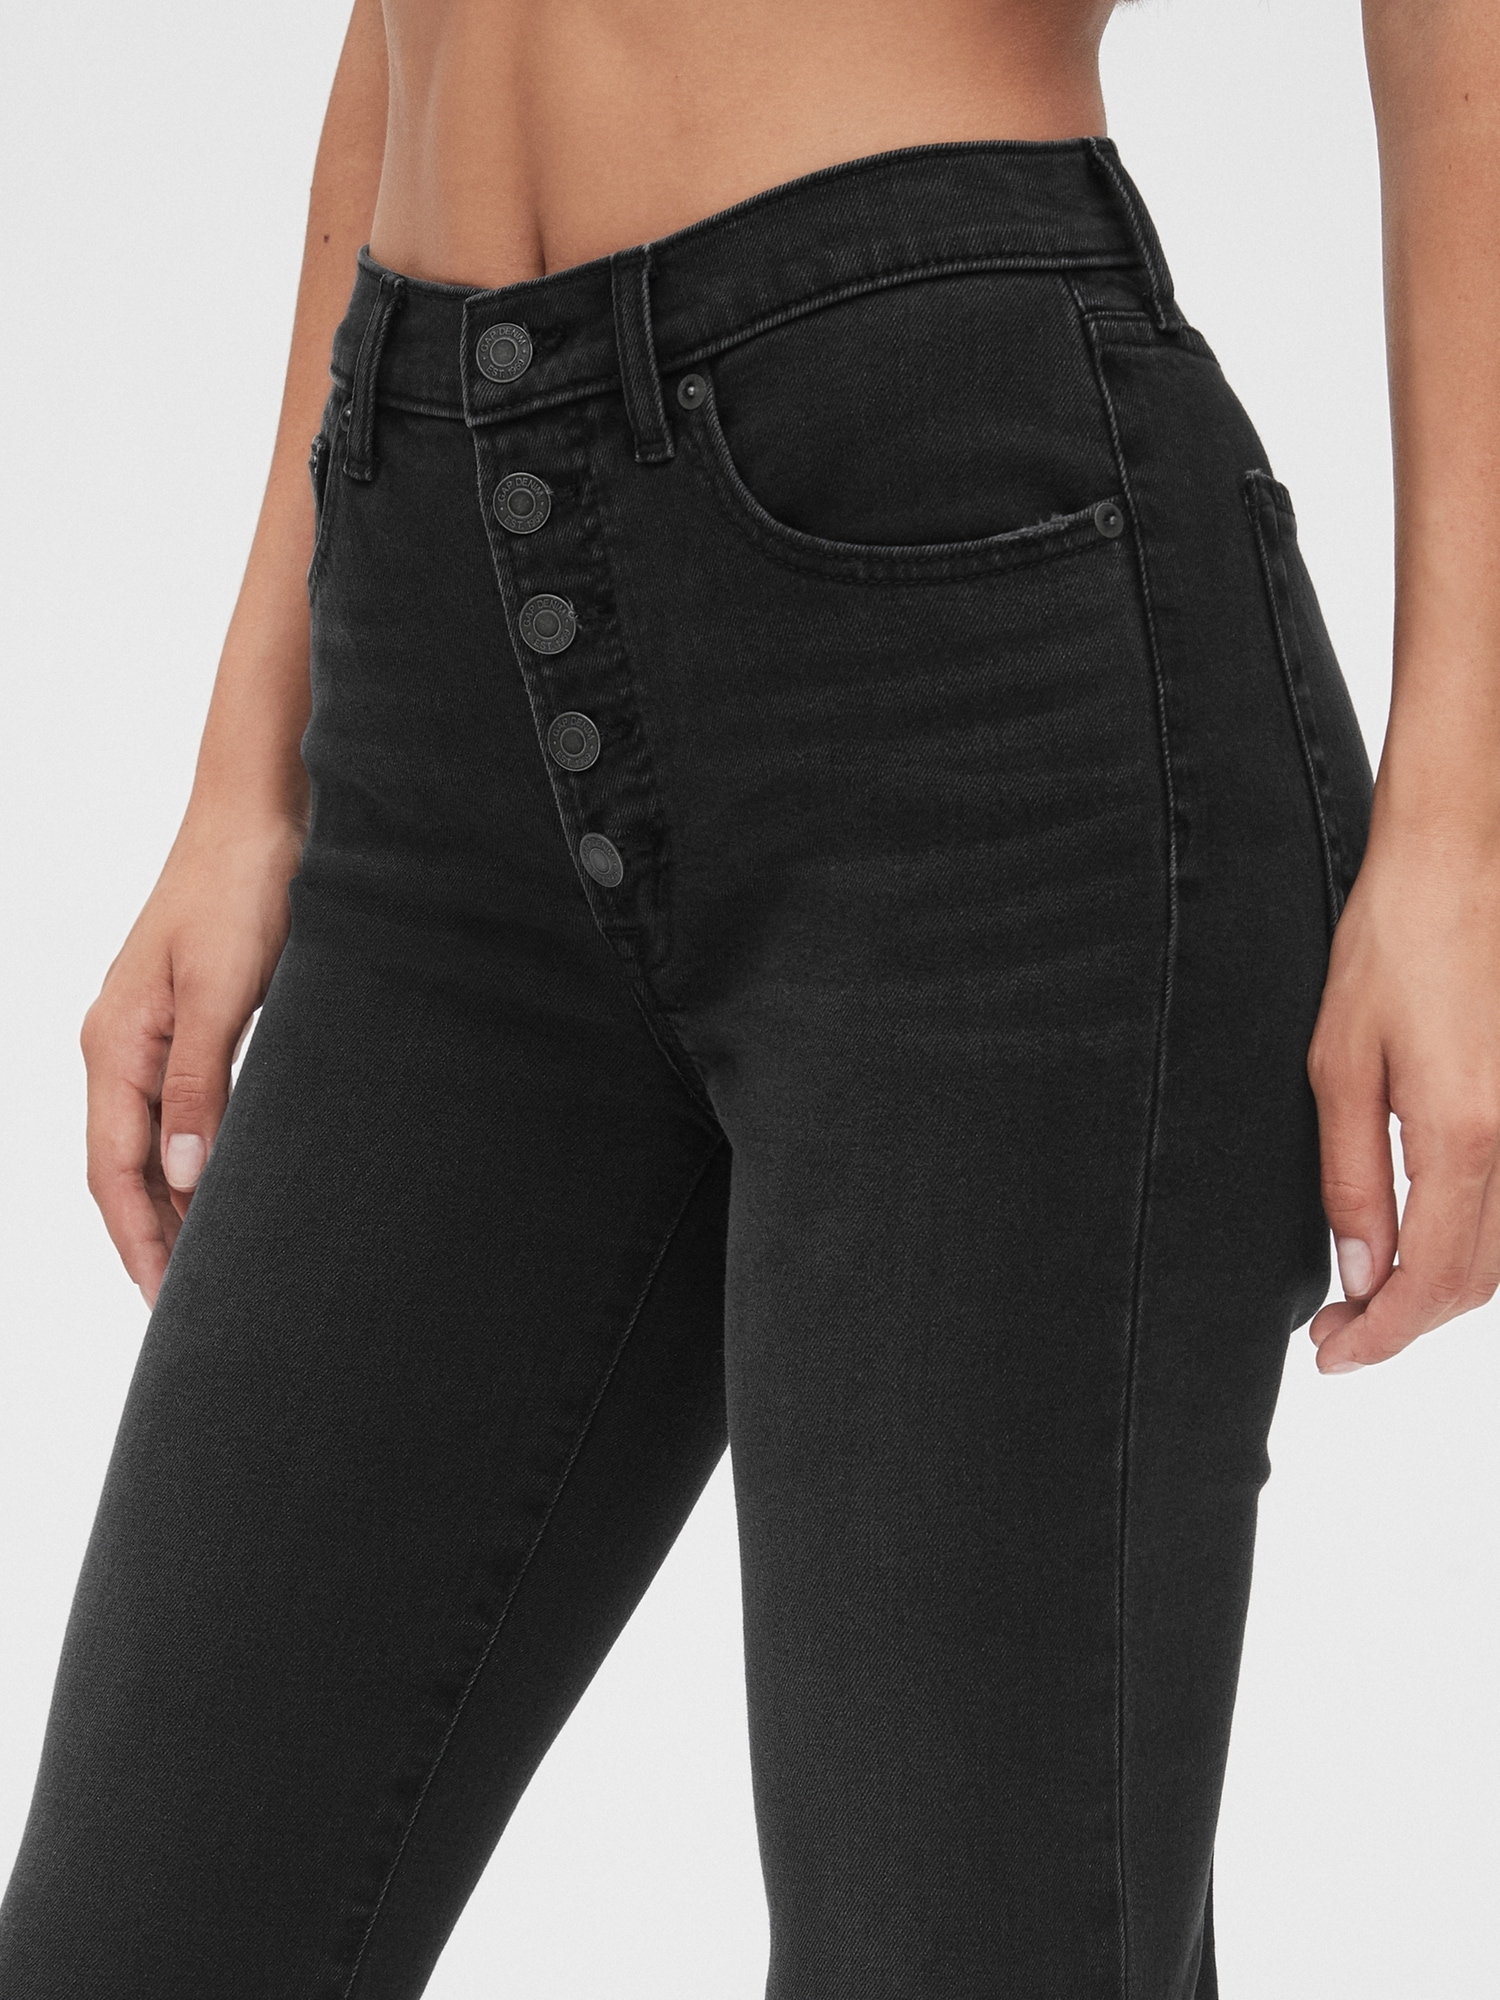 black button jeans